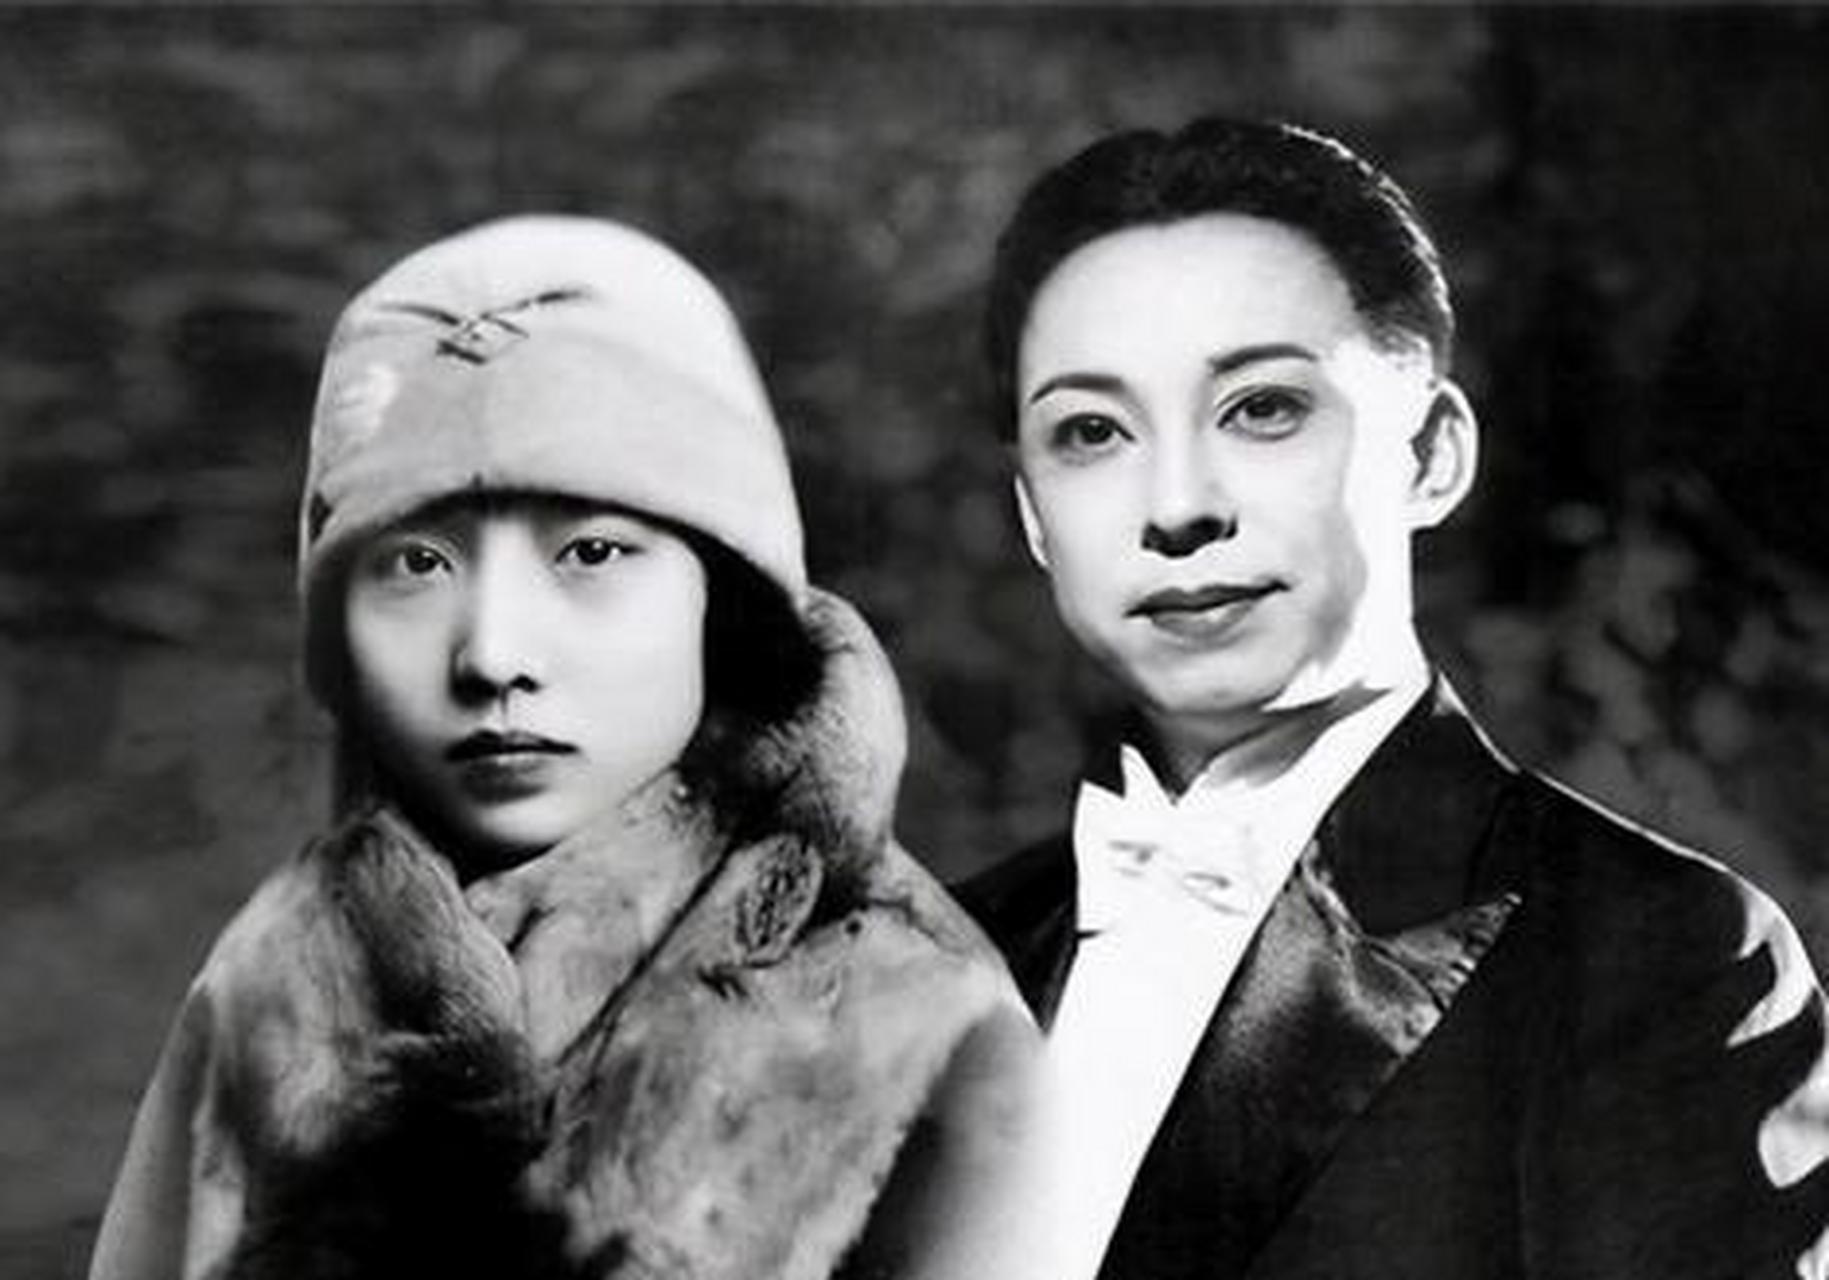 1937年,孟小冬去上海看望闺蜜姚玉兰,夜里2人同床而睡!